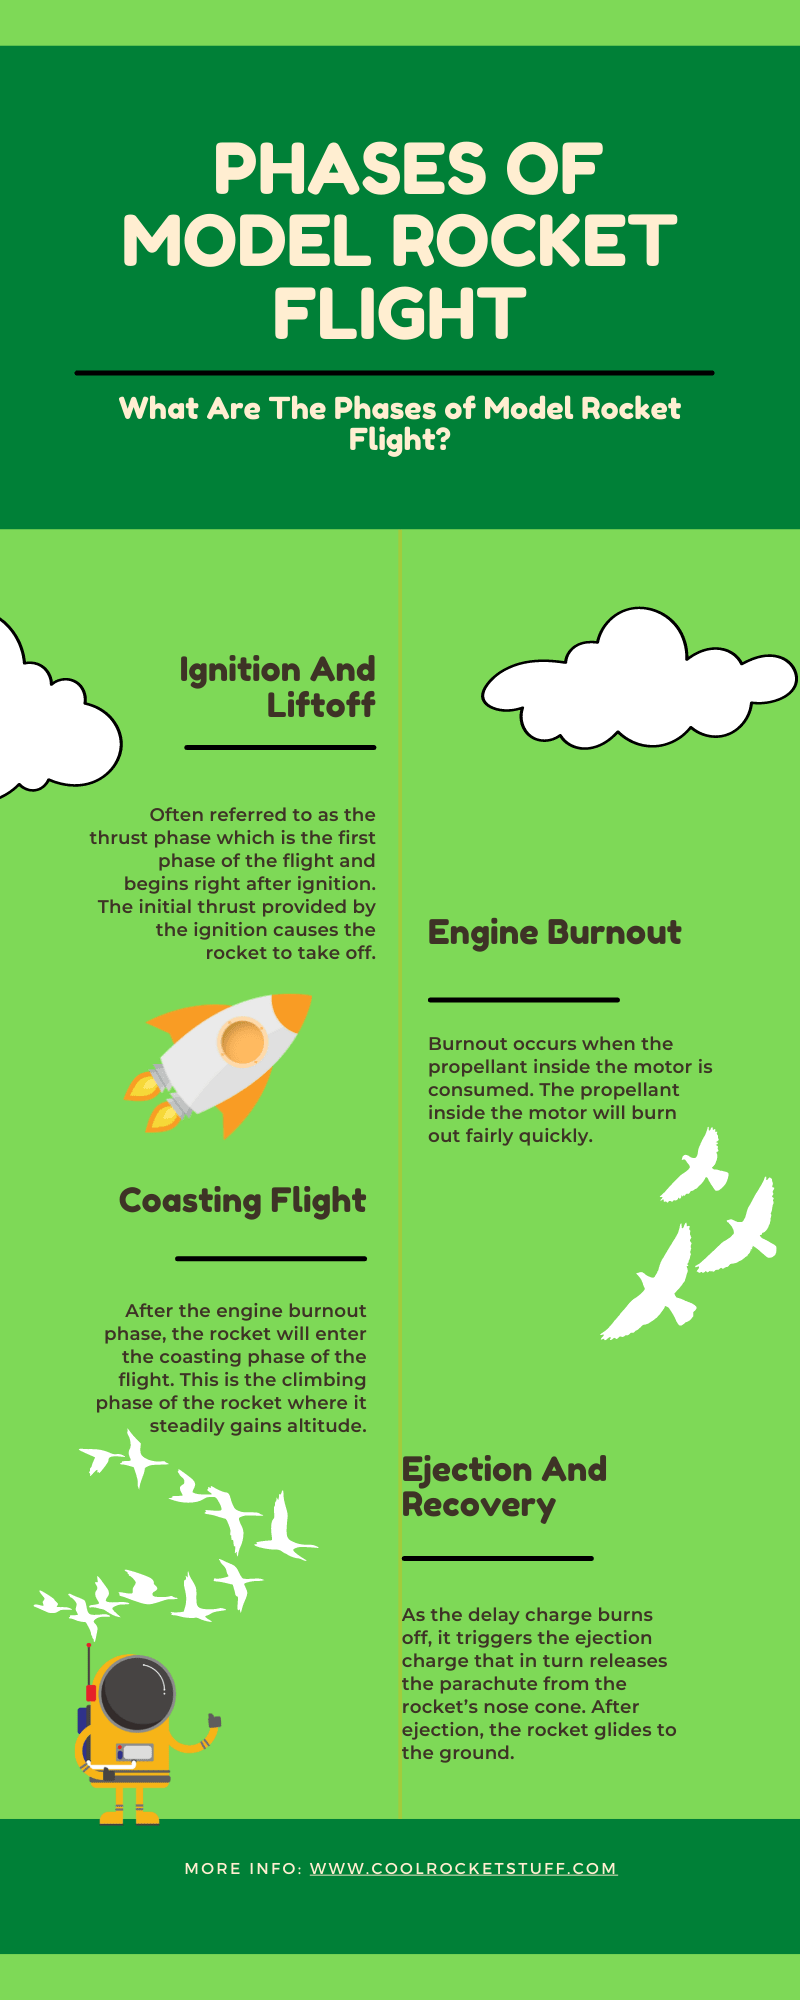 Phases of Model Rocket Flight